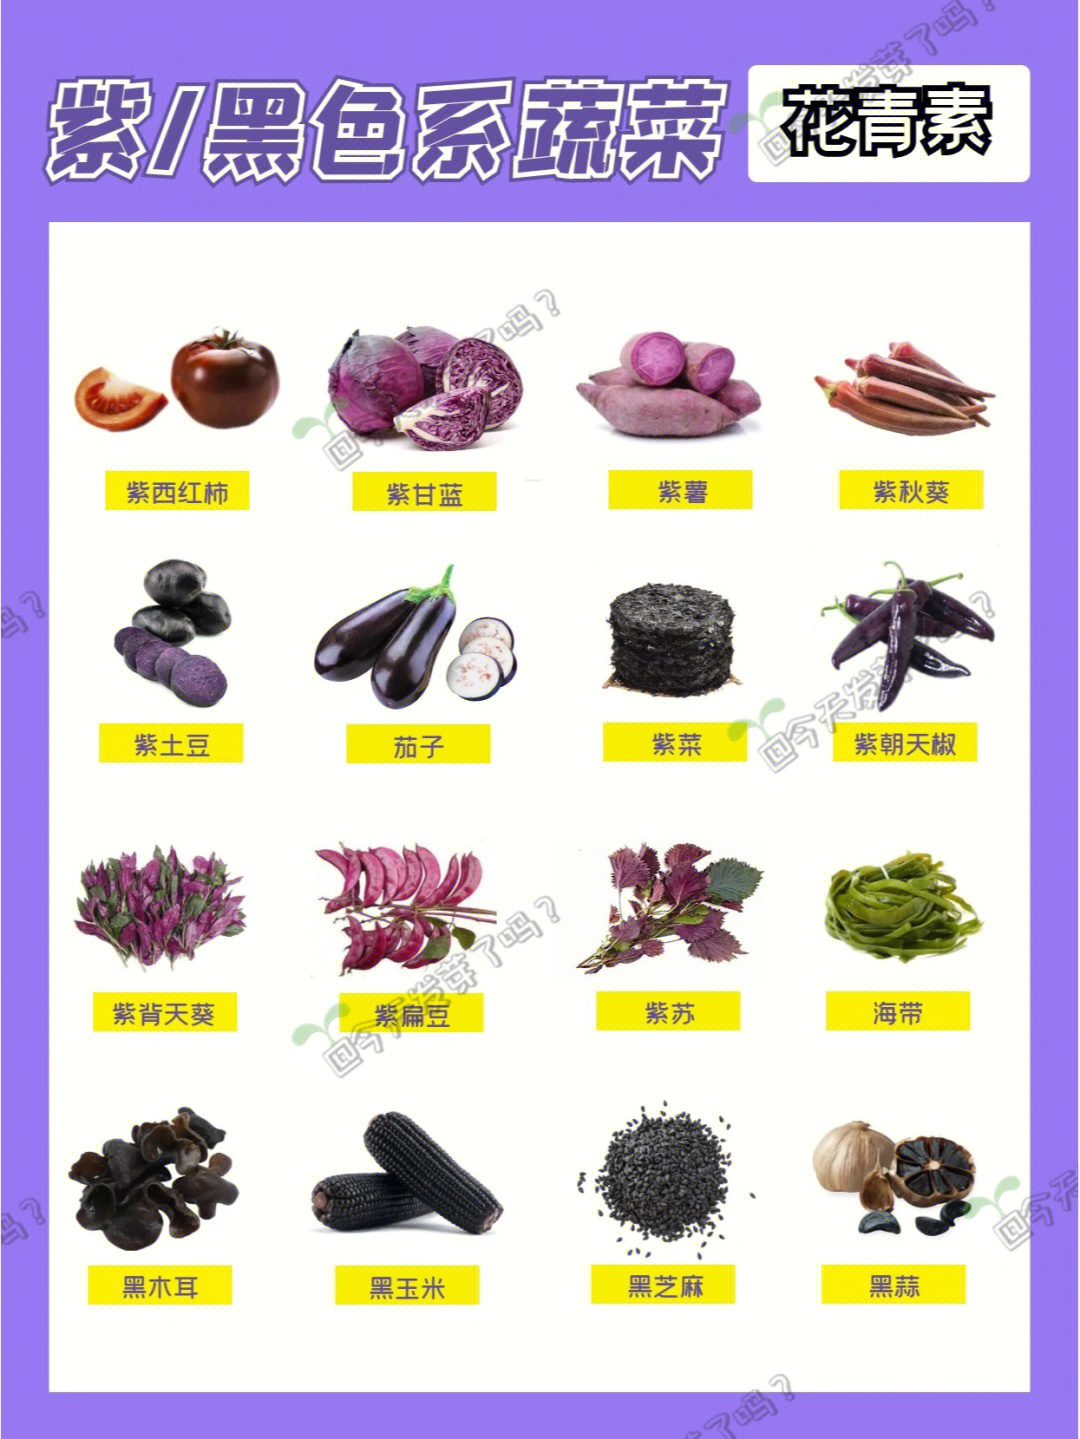 蔬菜种类 图册图片